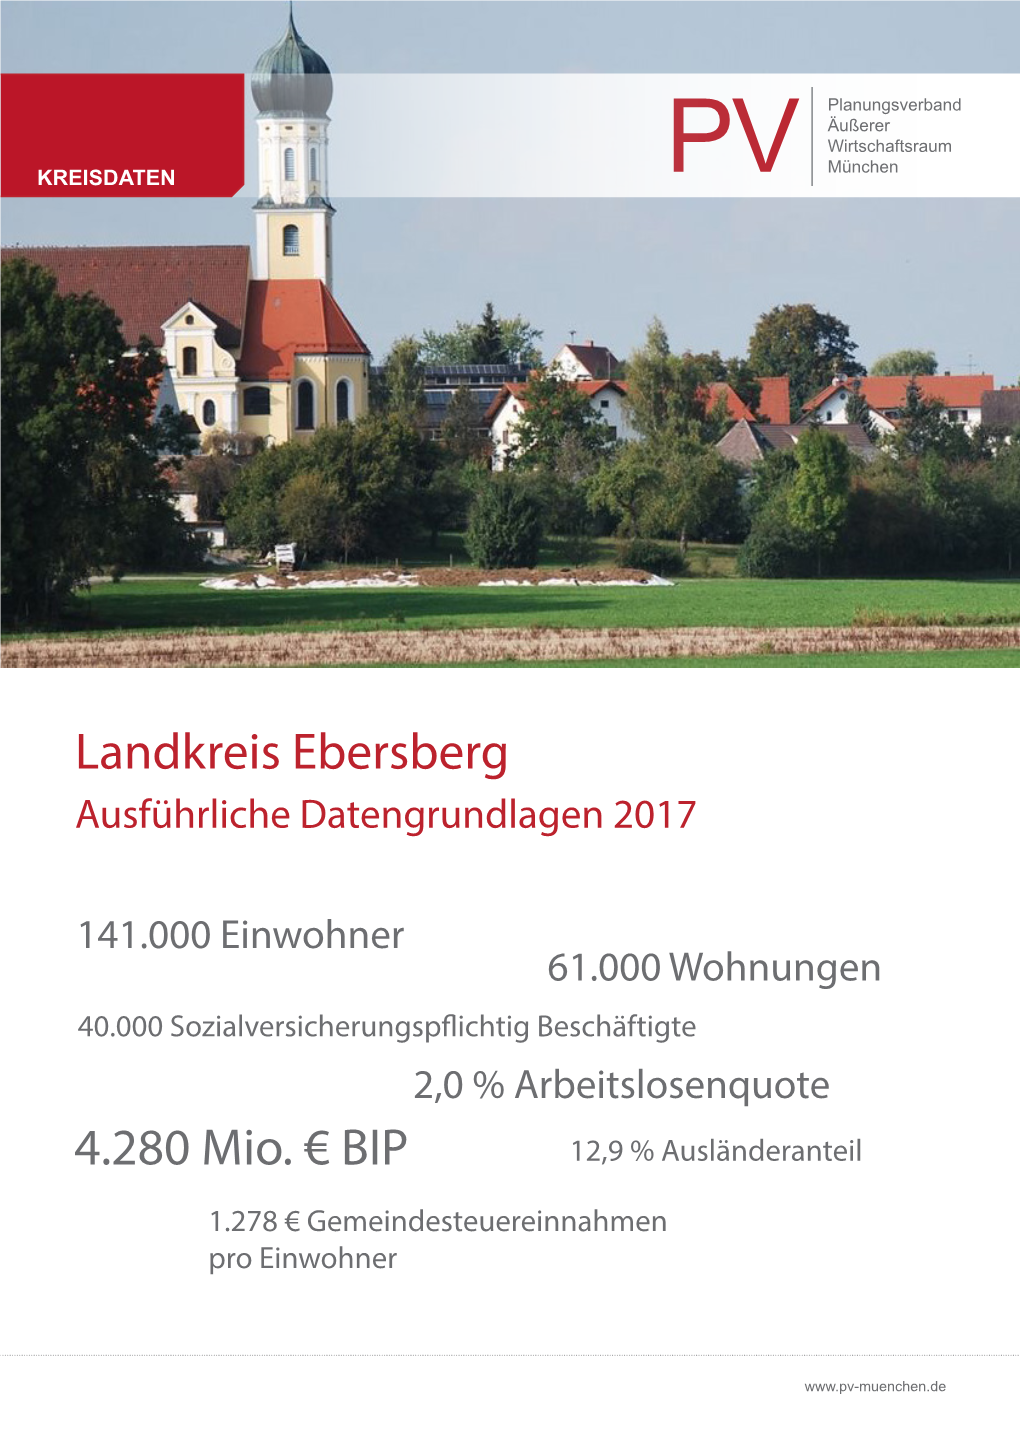 Landkreis Ebersberg 4.280 Mio. €